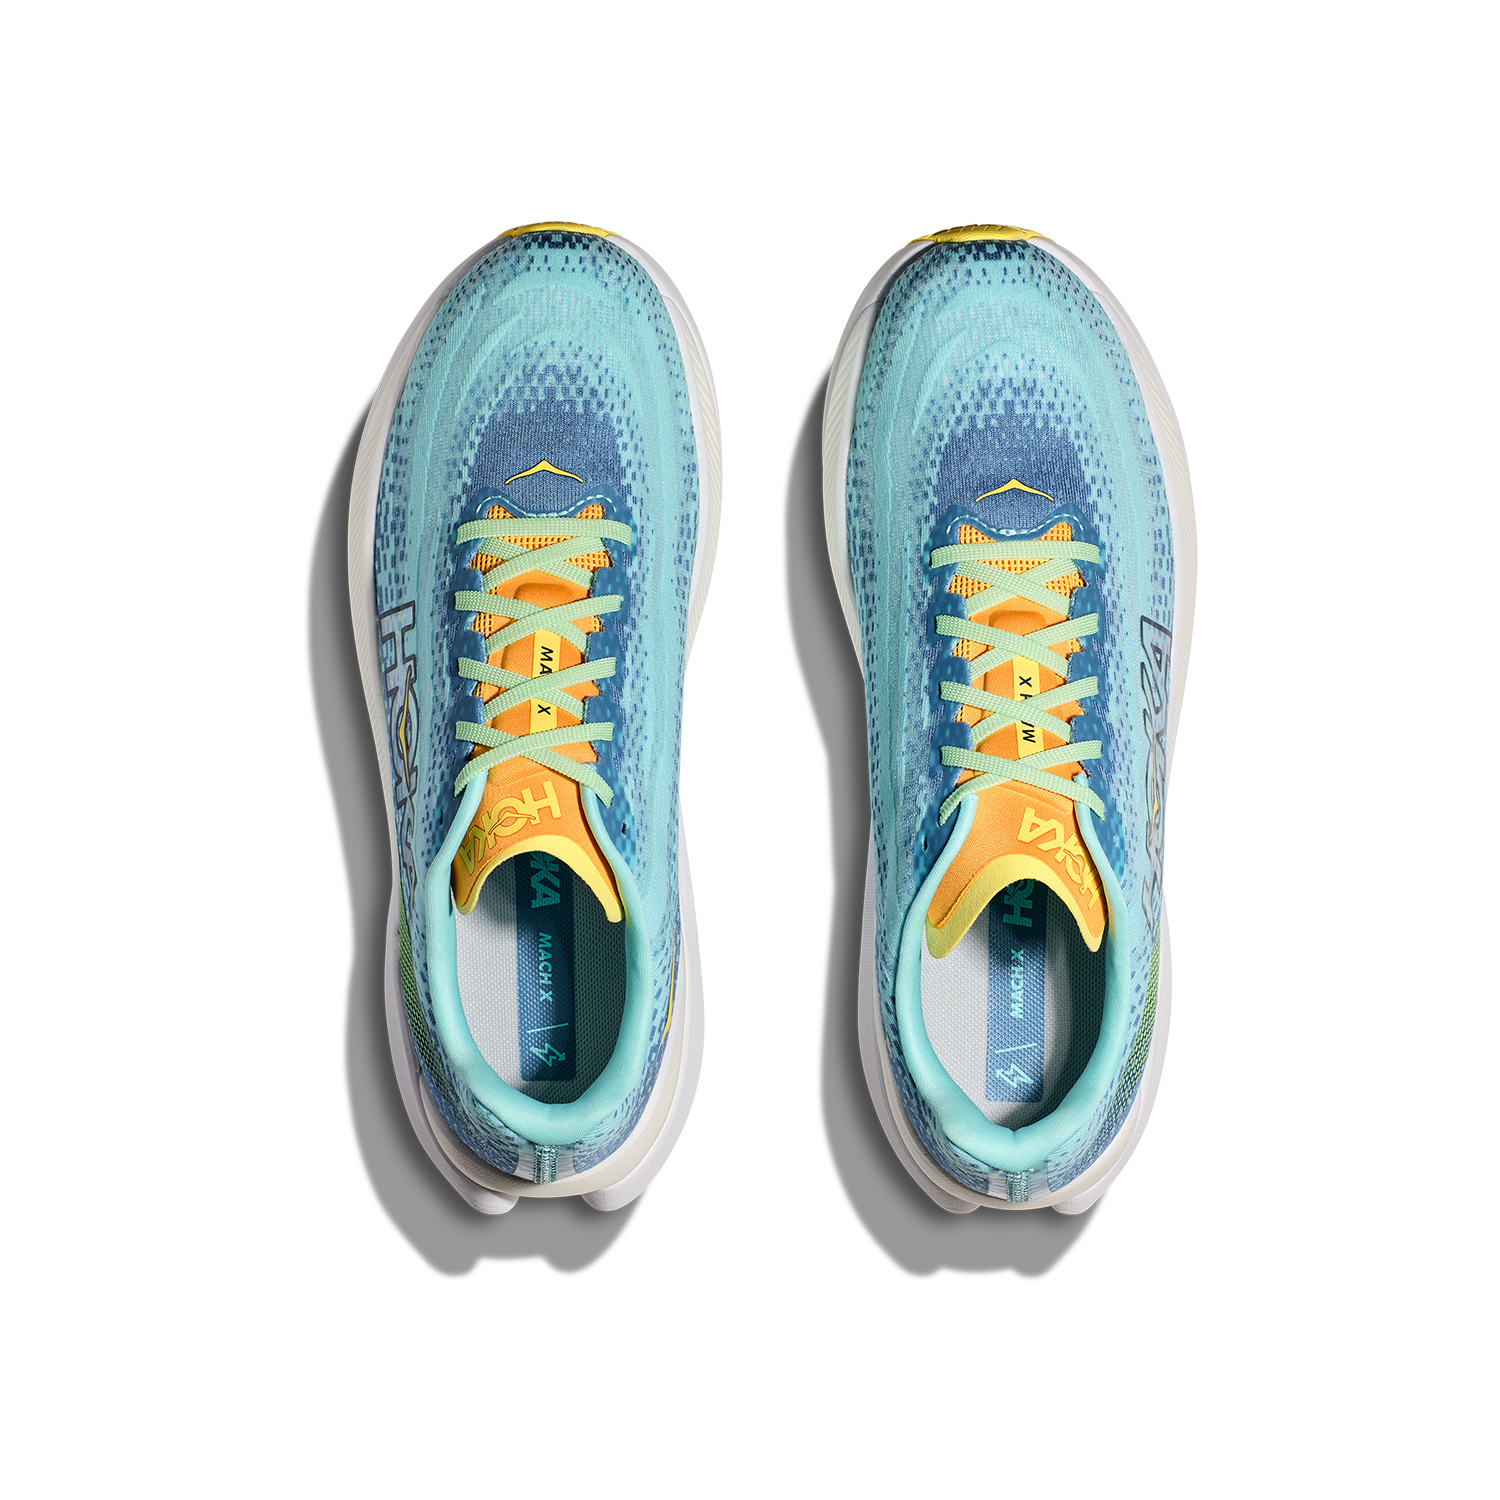 Hoka Mach X Men's Running Shoes - Dusk/Cloudless